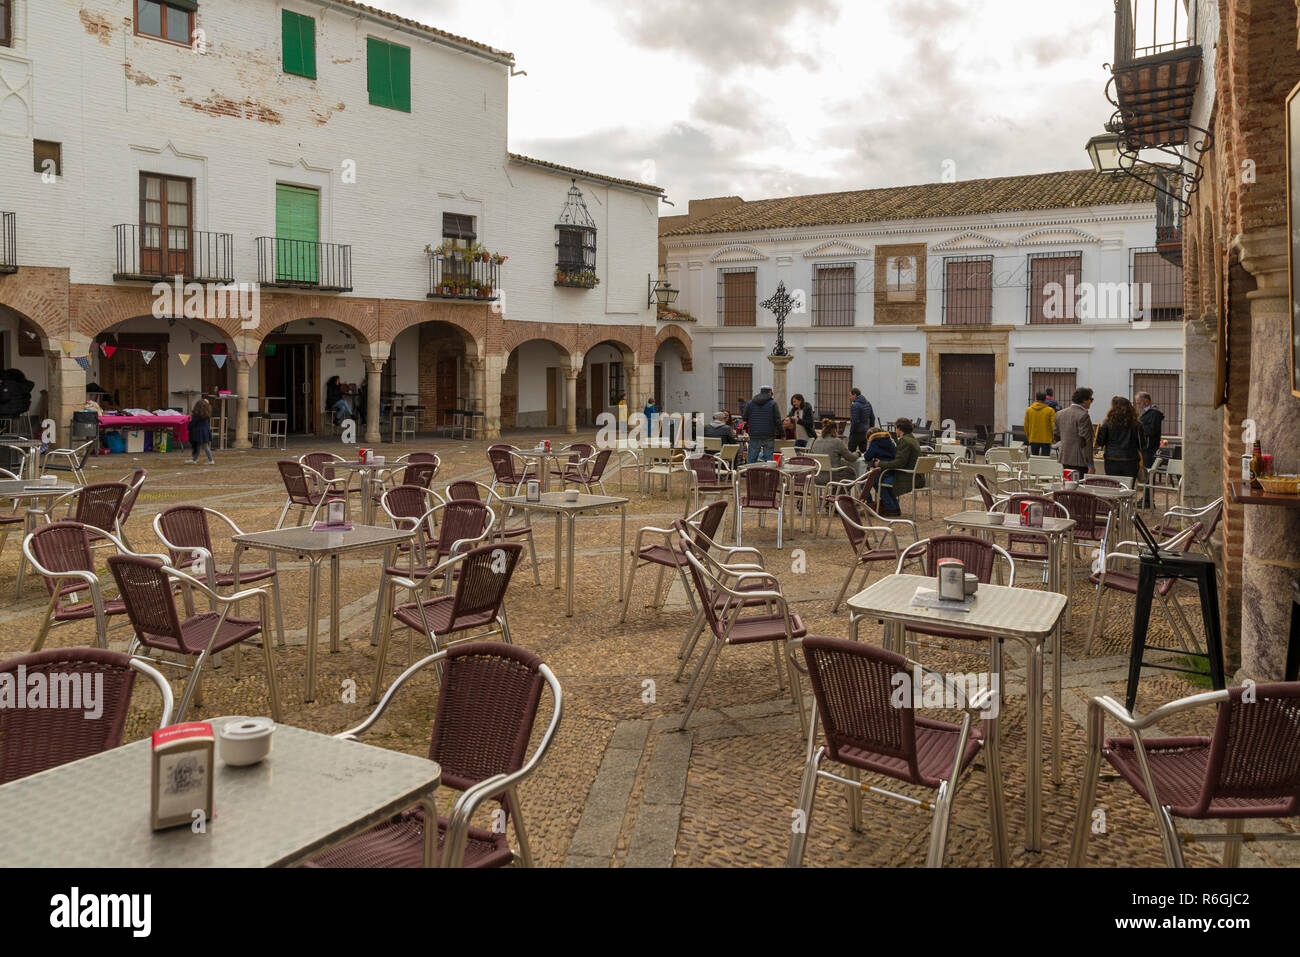 ZAFRA, Badajoz, Spanien - November 24, 2018: Die Menschen in den belebten Platz Klein (Plaza Chica) Stockfoto